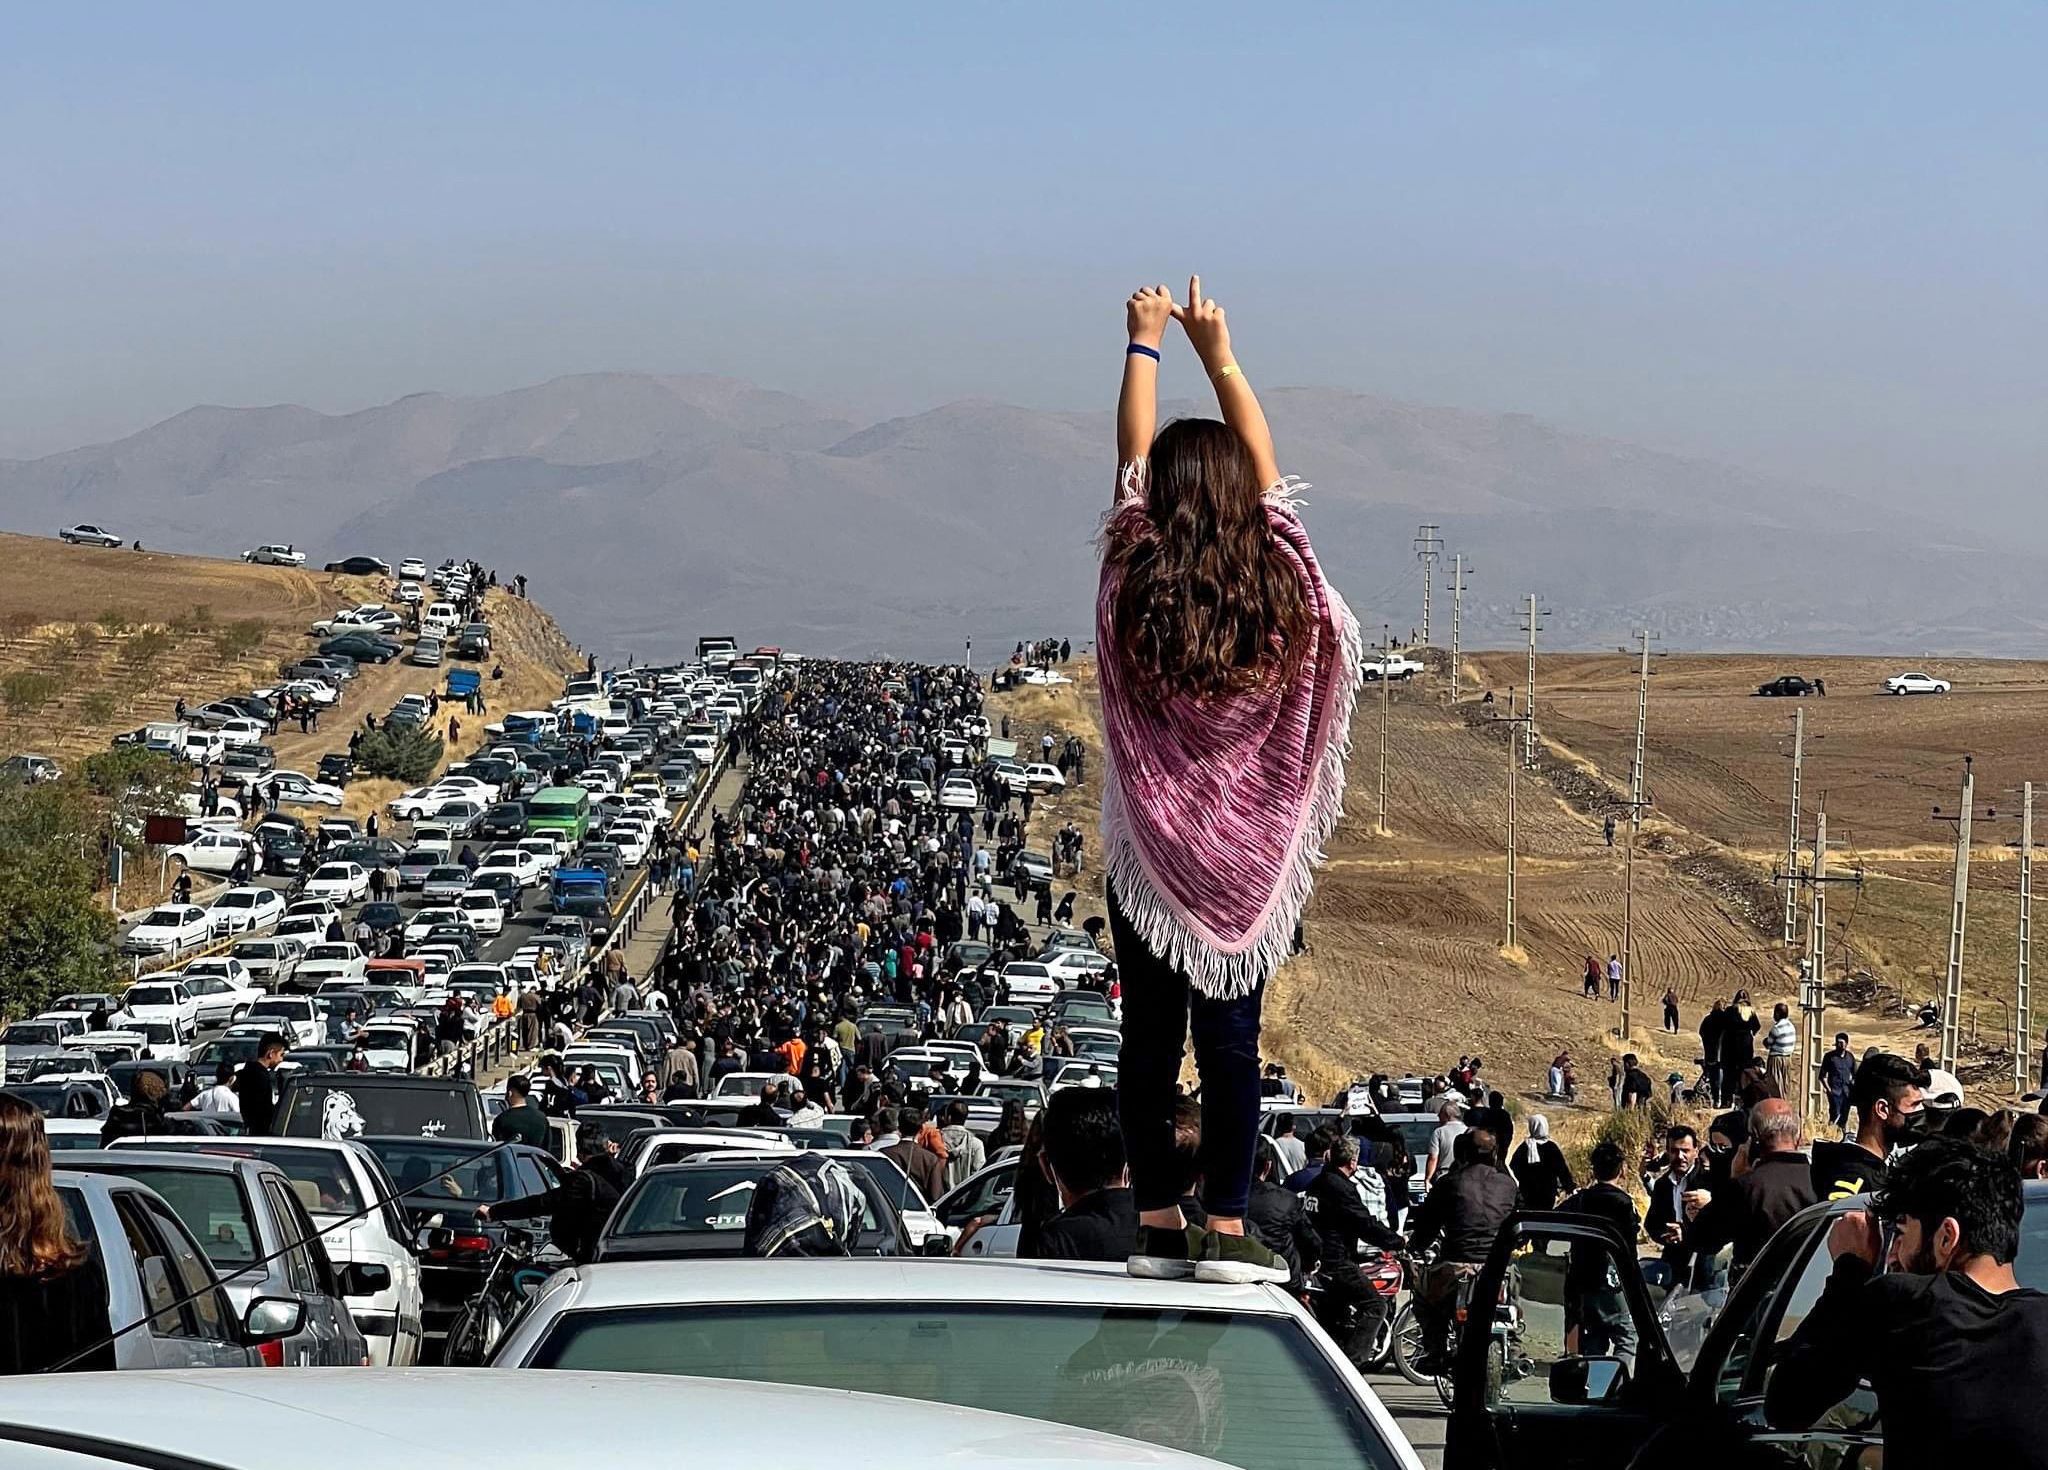 Une image publiée sur Twitter le 26 octobre 2022 montre une femme non voilée sur le toit d’un véhicule alors que des milliers de personnes se dirigent vers le cimetière Aichi de Saghez, ville natale de Mahsa Amini (Reuters)